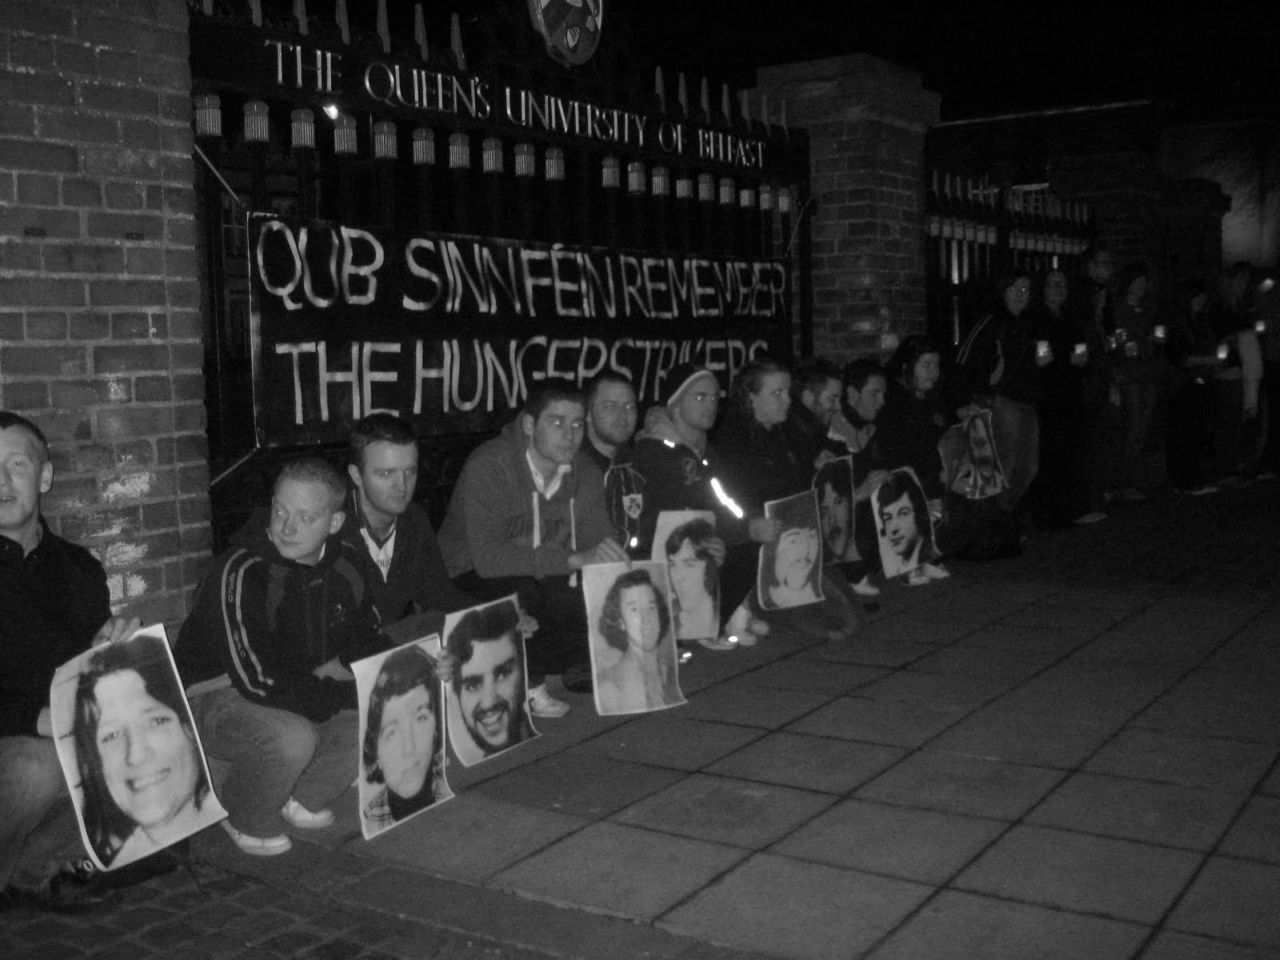 IRA - strajk głodowy